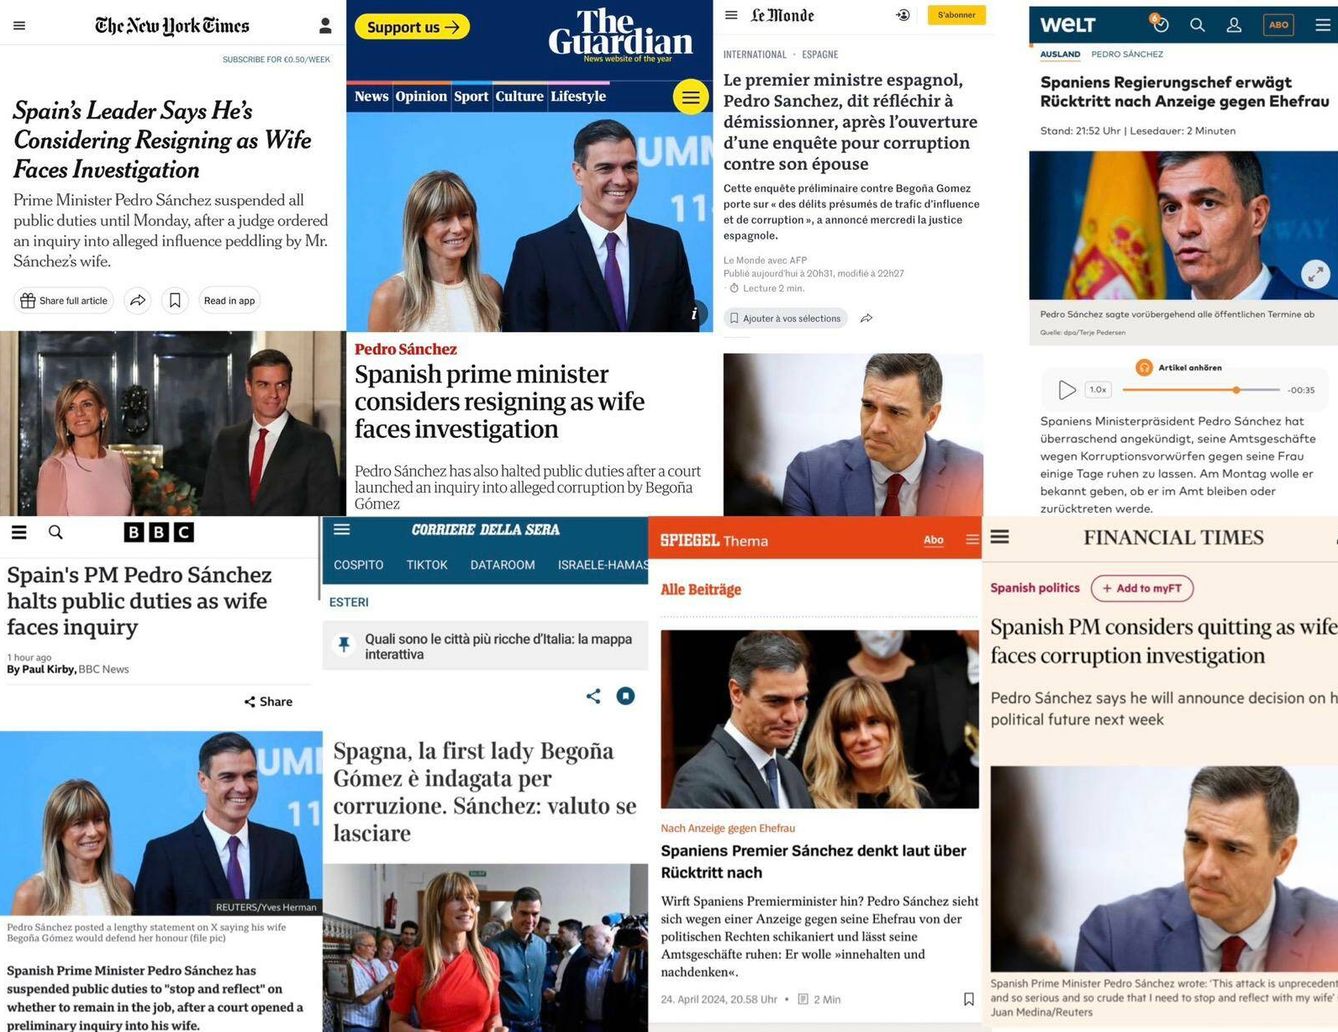 Titulares de la prensa internacional sobre la noticia. (EC)